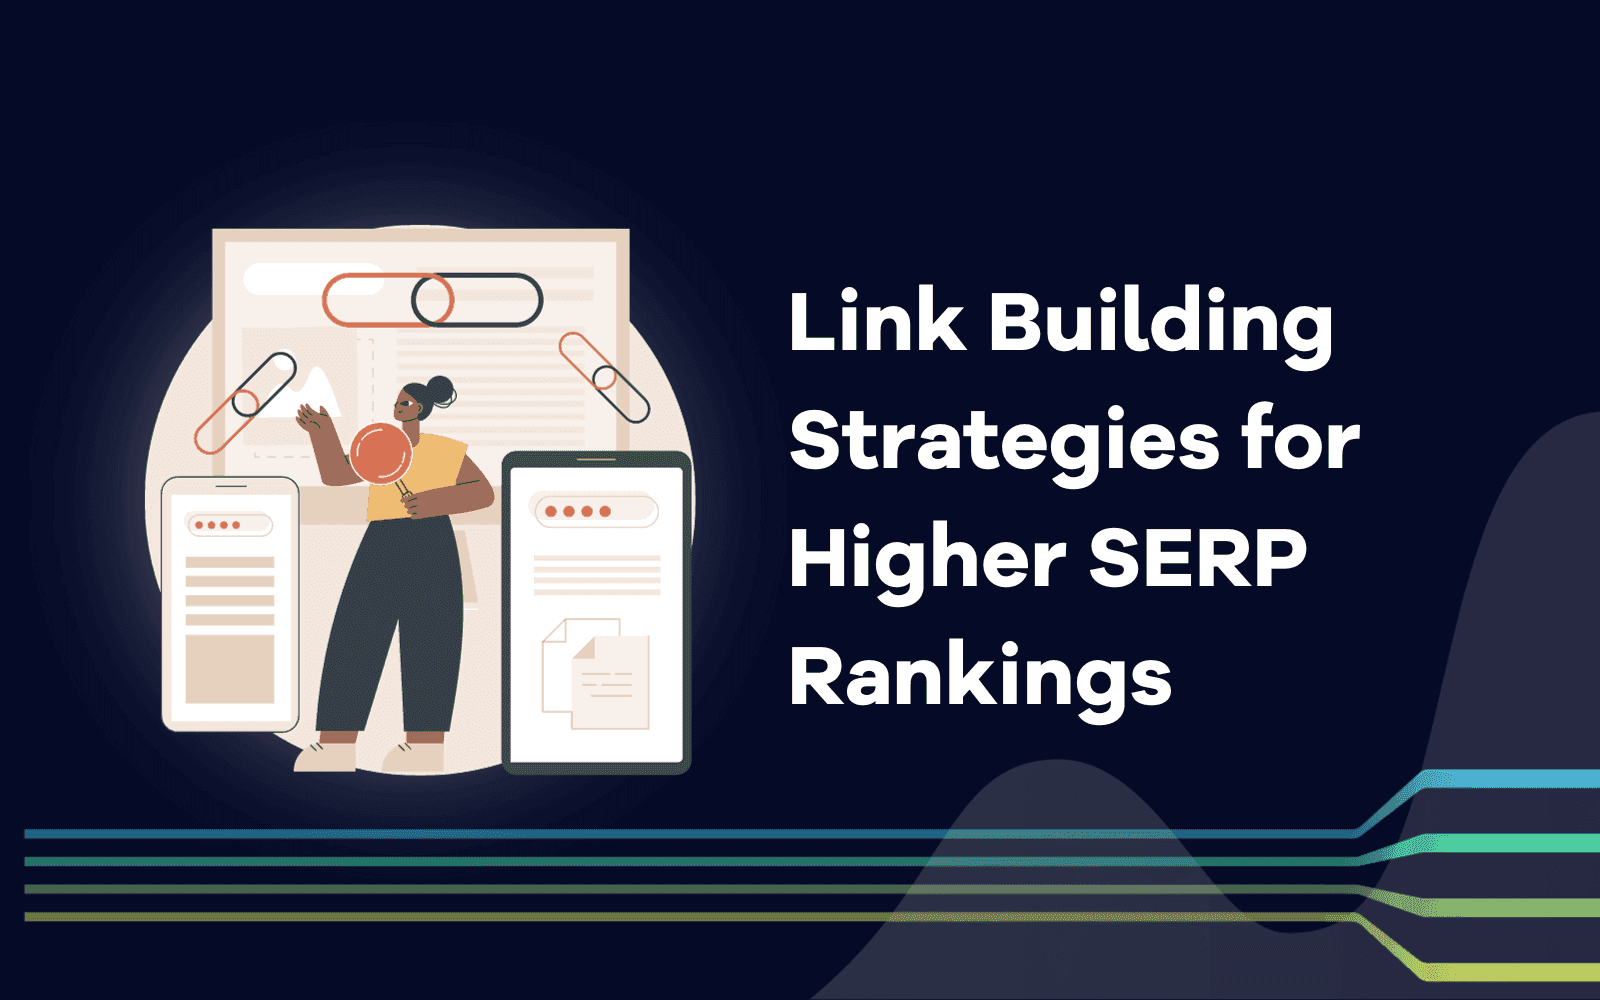 Quente ou não? 7 novas estratégias de Link Building para obter classificações SERP mais altas